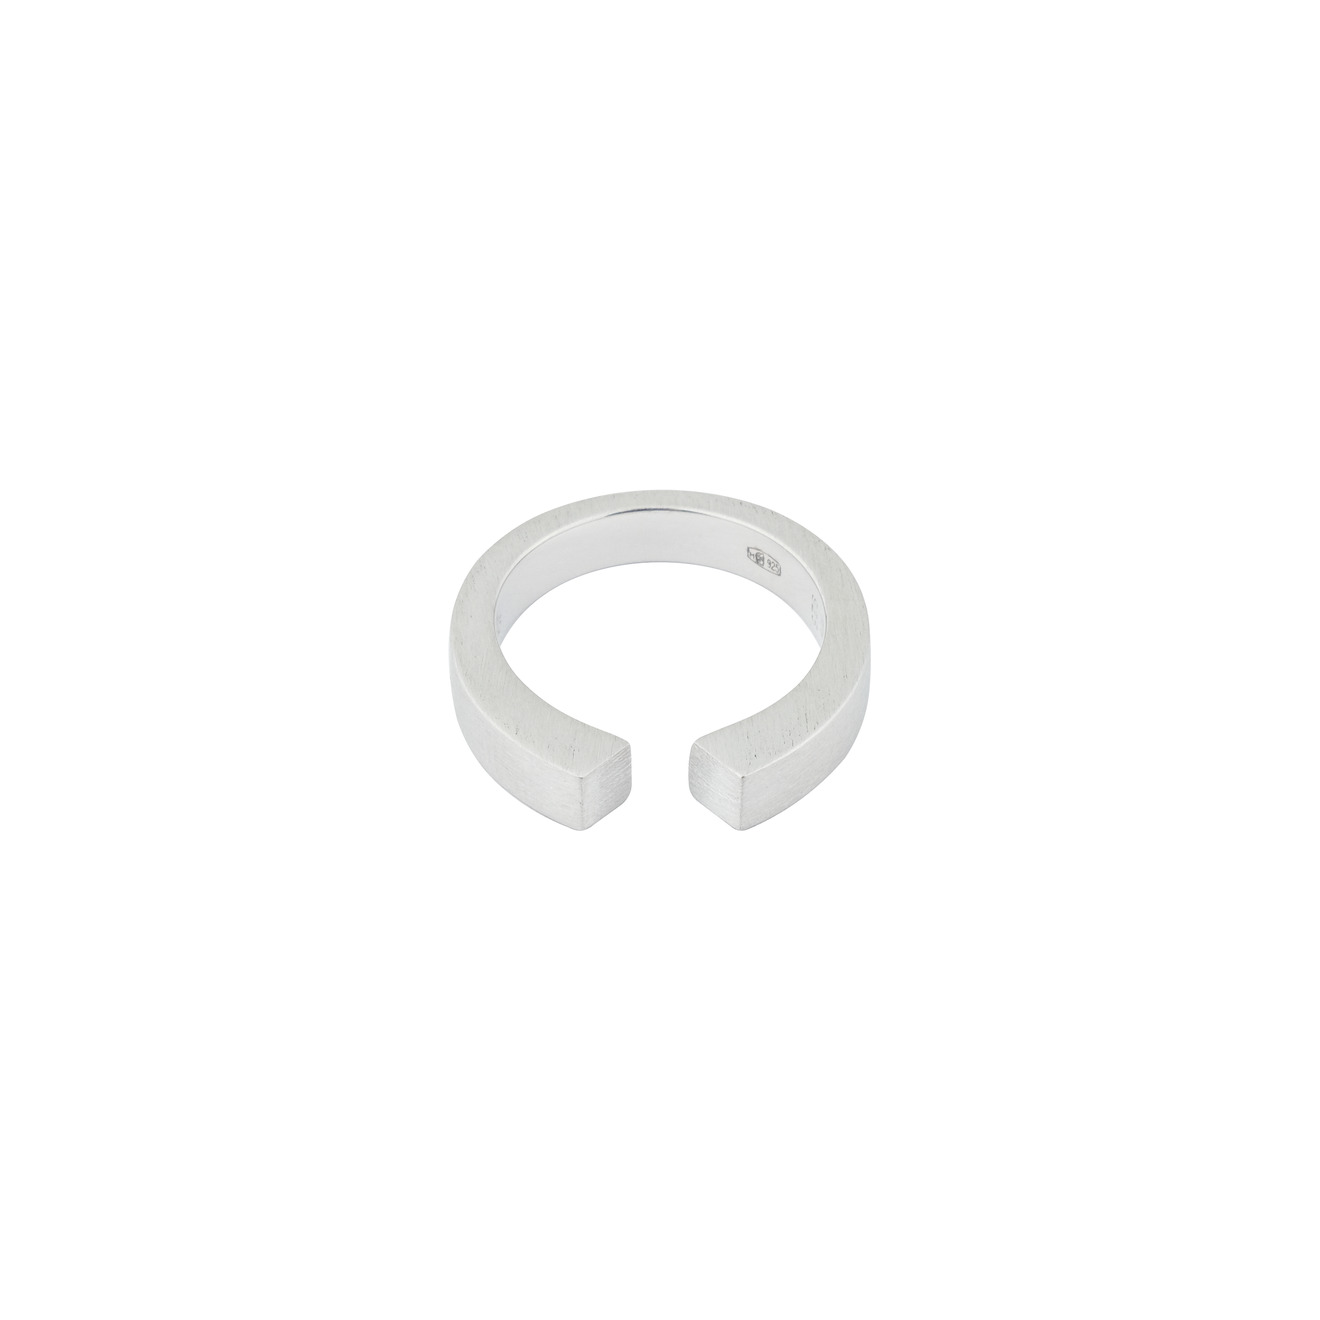 tom wood матовое незамкнутое кольцо split ring из сереба Tom Wood Матовое незамкнутое кольцо Split ring из сереба